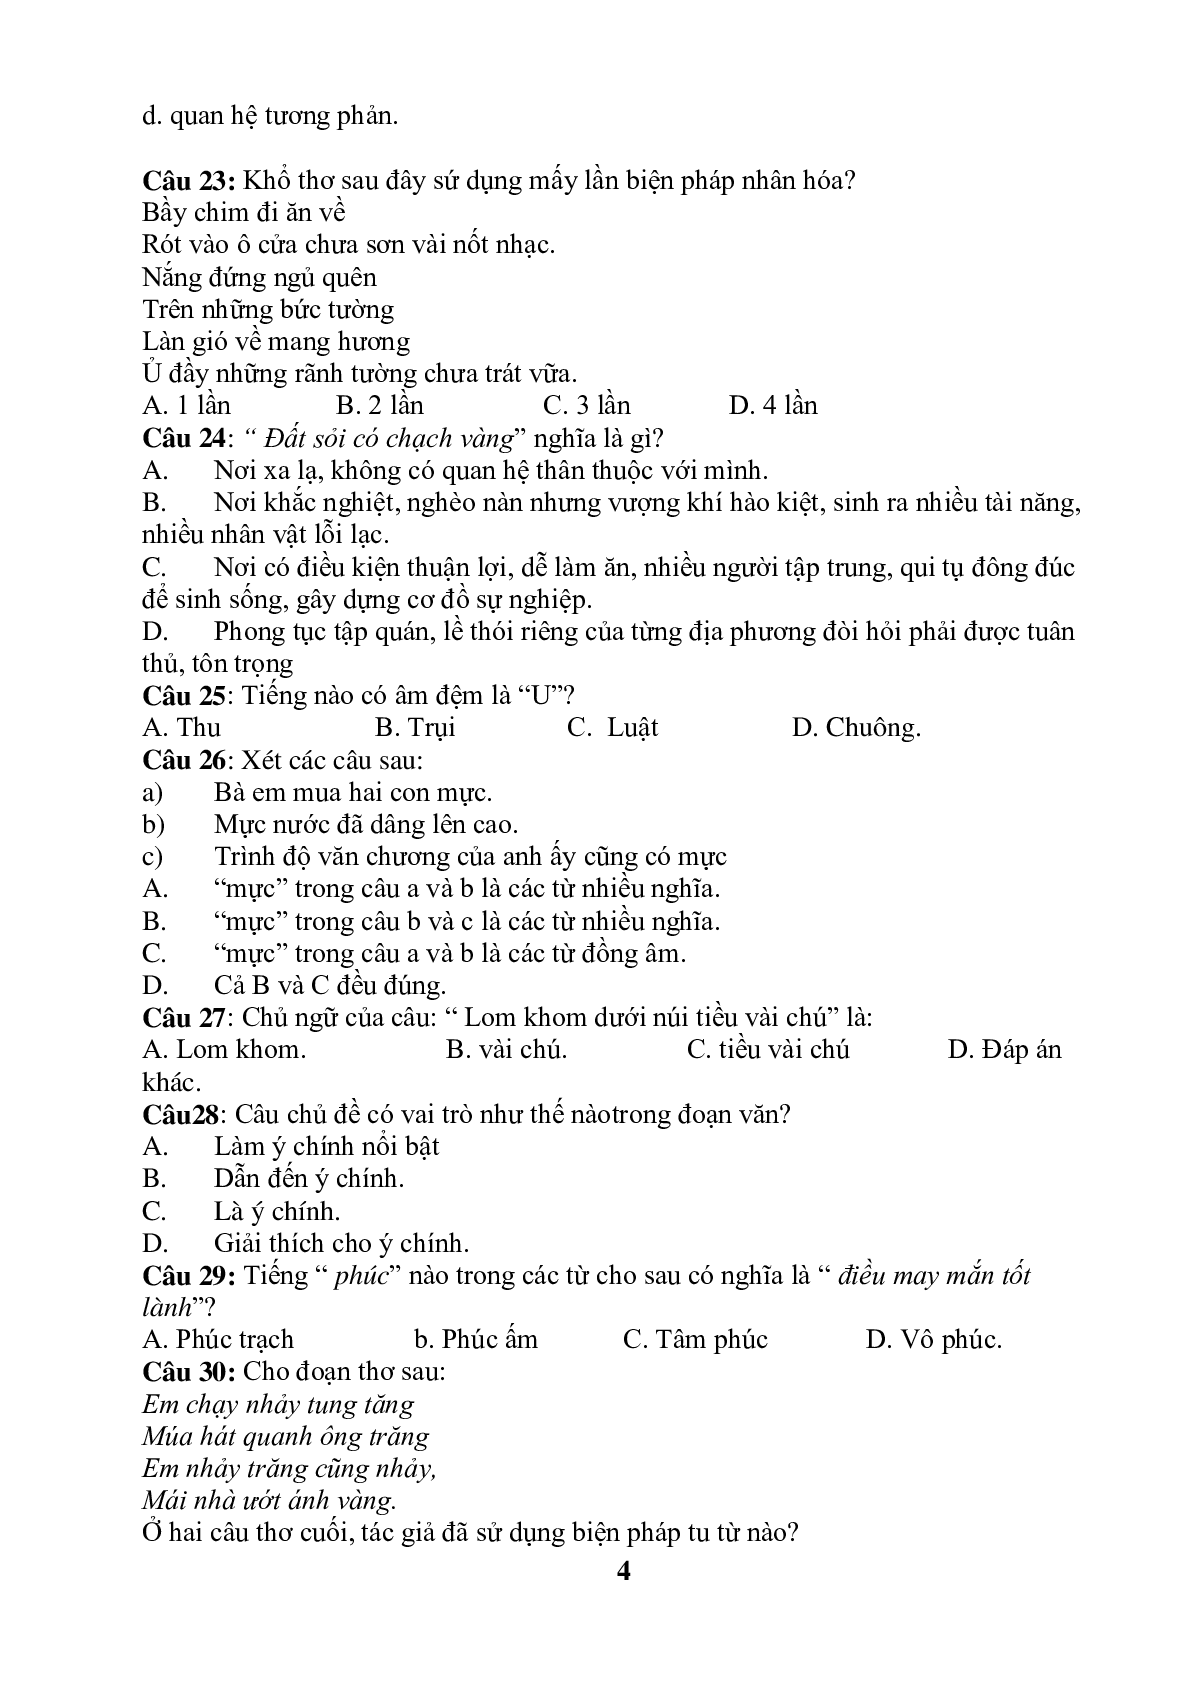 99 câu trắc nghiệm bồi dưỡng HSG môn Tiếng Việt lớp 5 (trang 4)